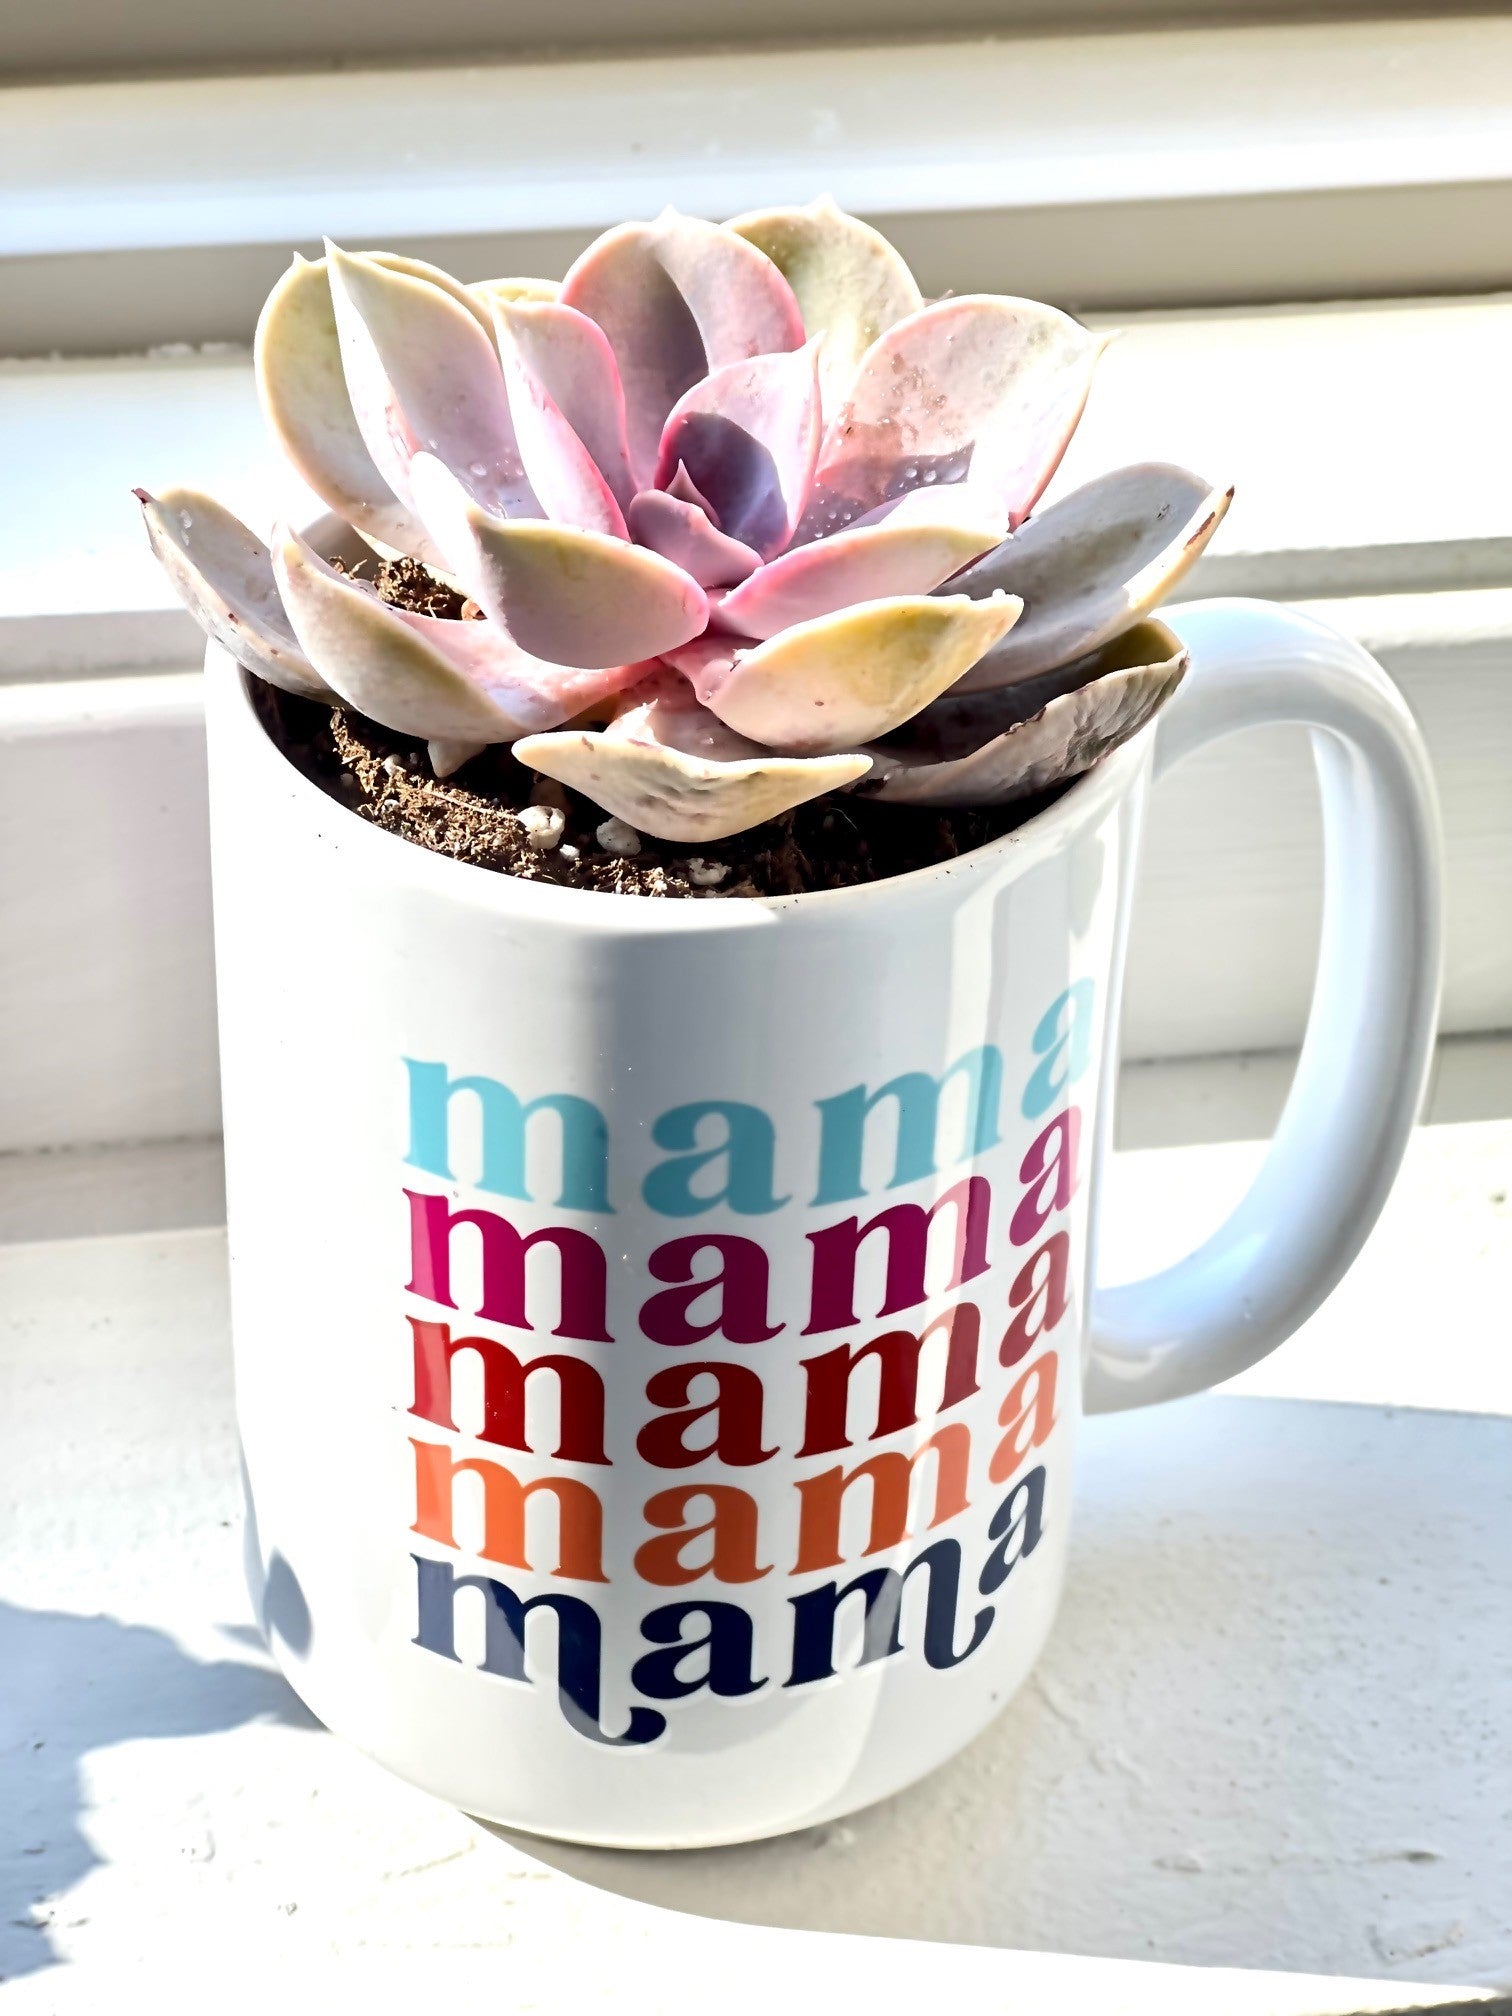 Weird Moms Build Character Mug